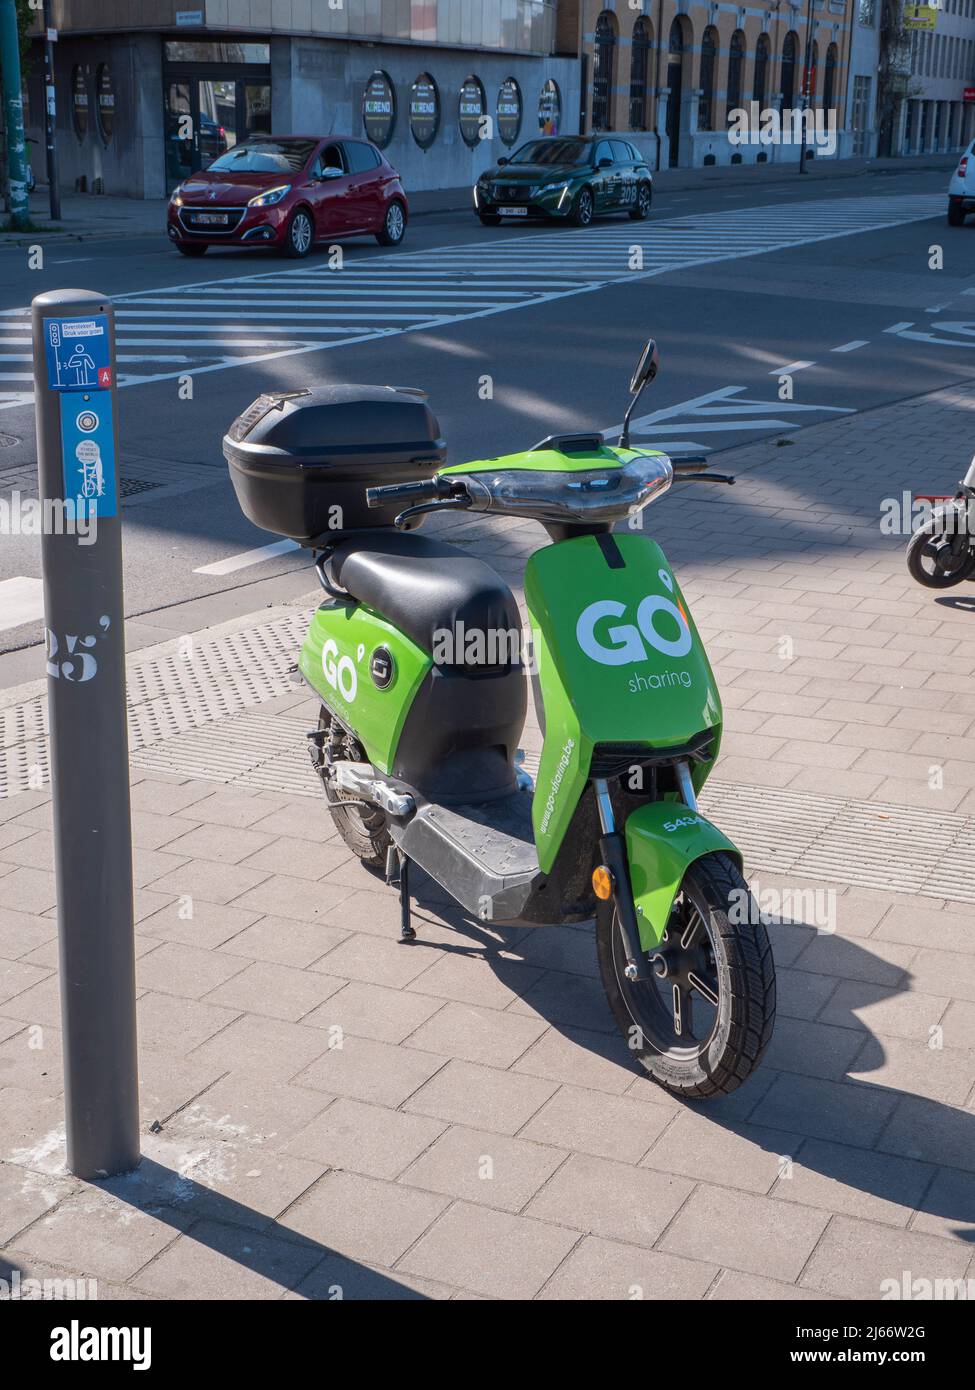 Antwerpen, Belgien, 17. April 2020, Grüner Go-Sharing-Roller, der auf dem Fußgängerweg an einer Zebrakreuzung in der Stadt Antwerpen geparkt ist Stockfoto